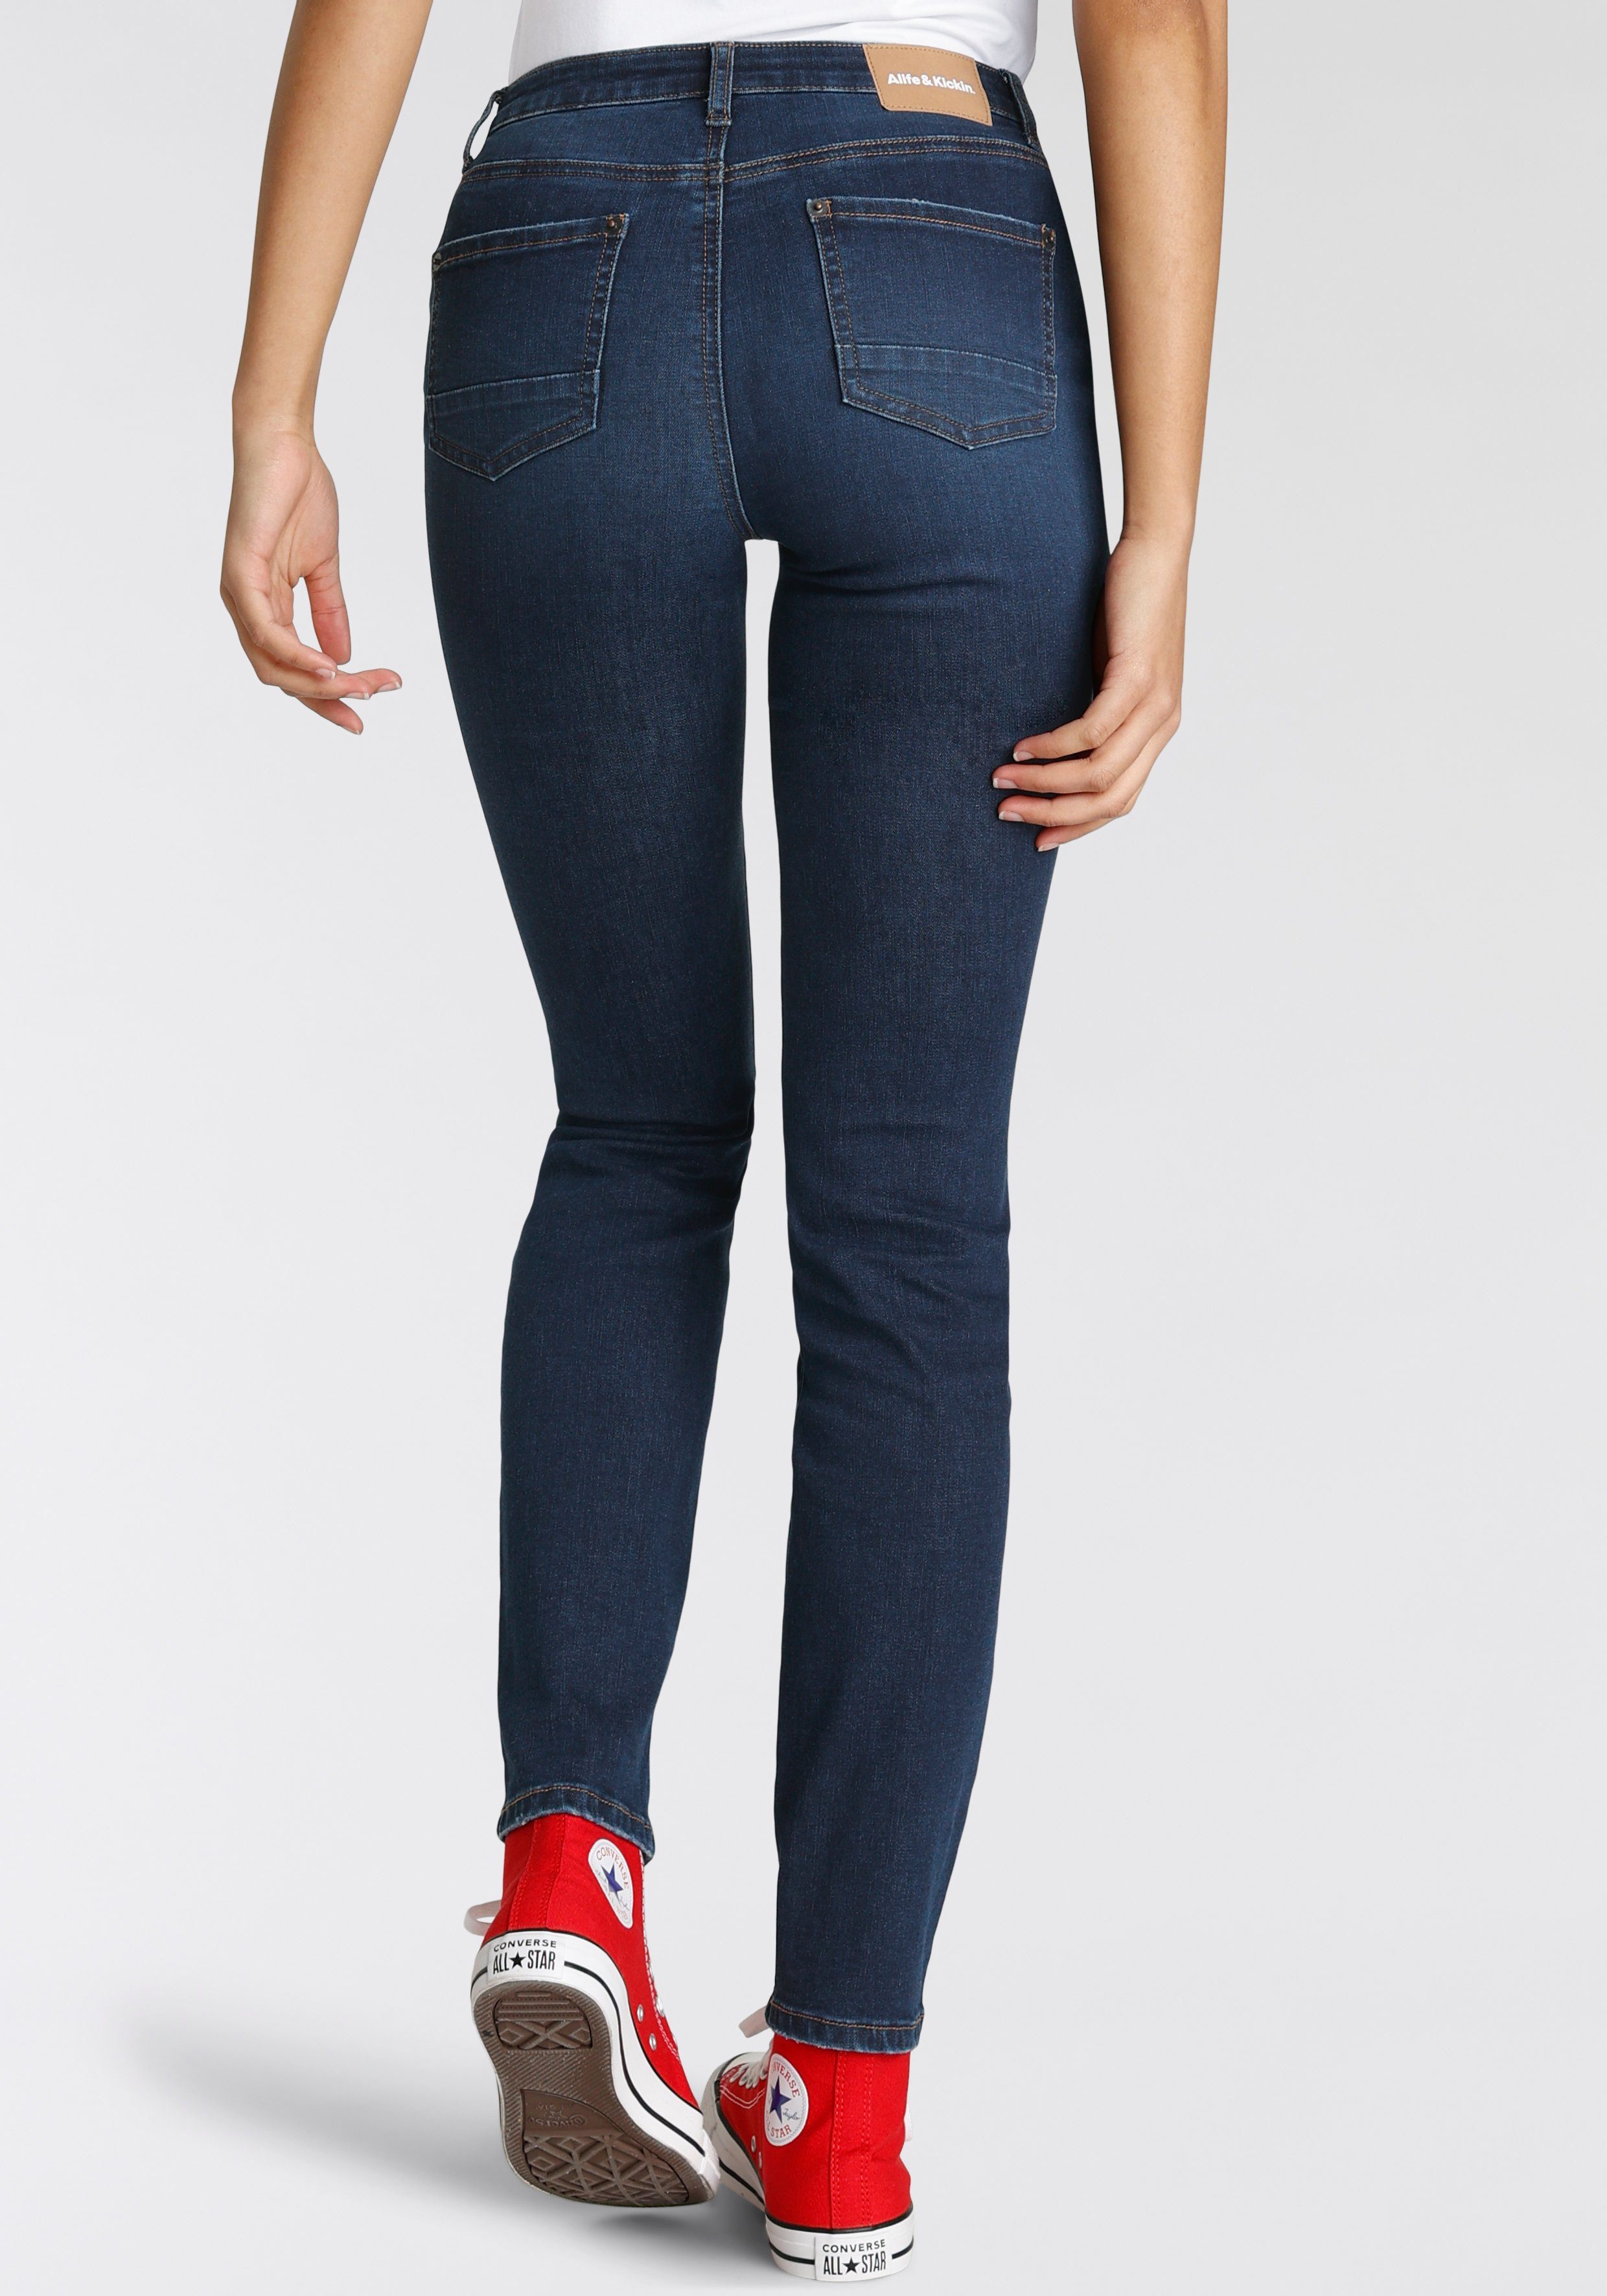 Alife & Kickin High-waist-Jeans Slim-Fit used blue dark KOLLEKTION NEUE NolaAK